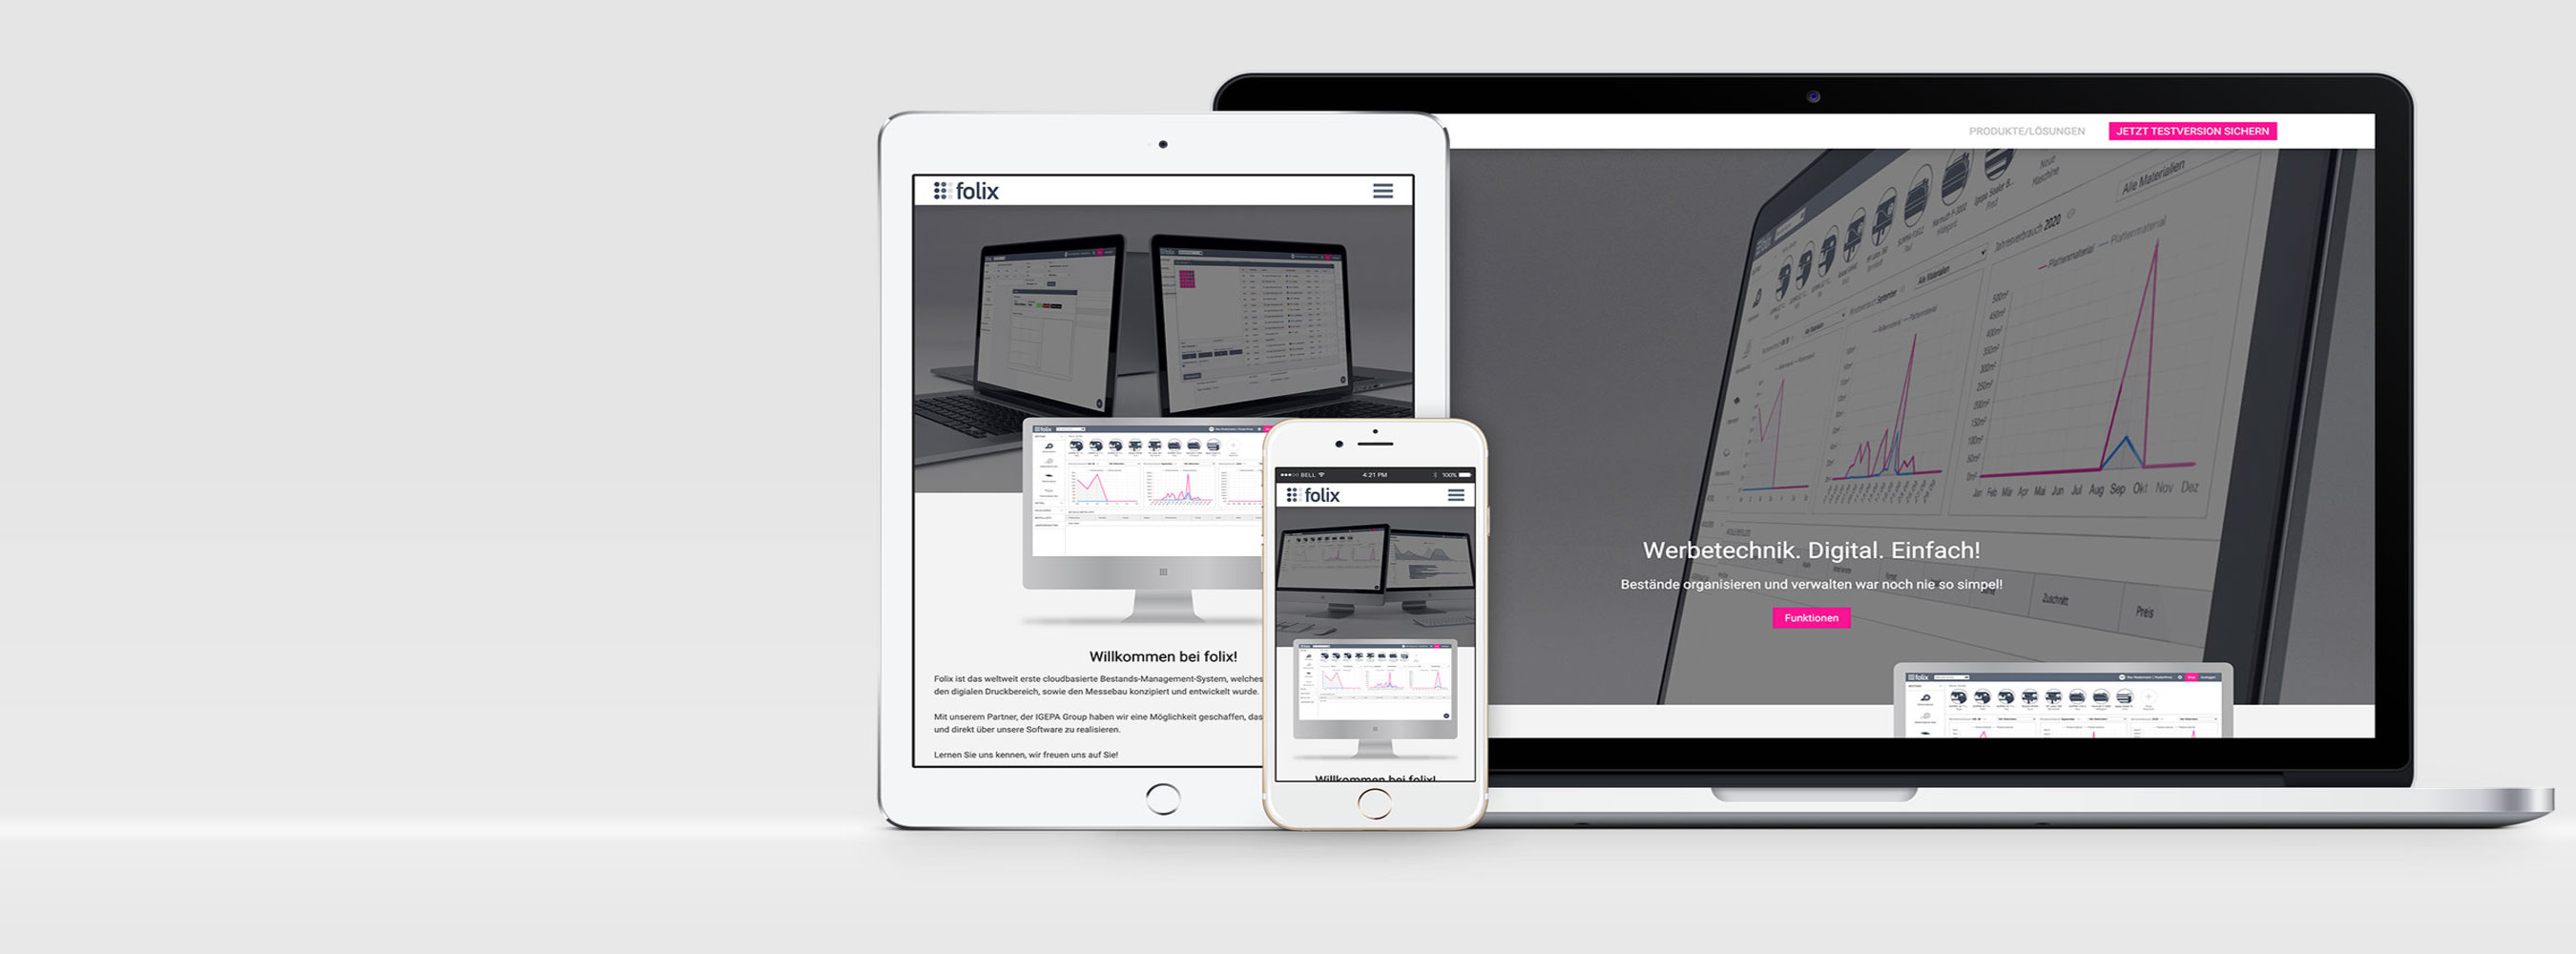 Konzeption Gestaltung und technische Umsetzung der Internetseite für die Interneseite für die Folix Software GmbH